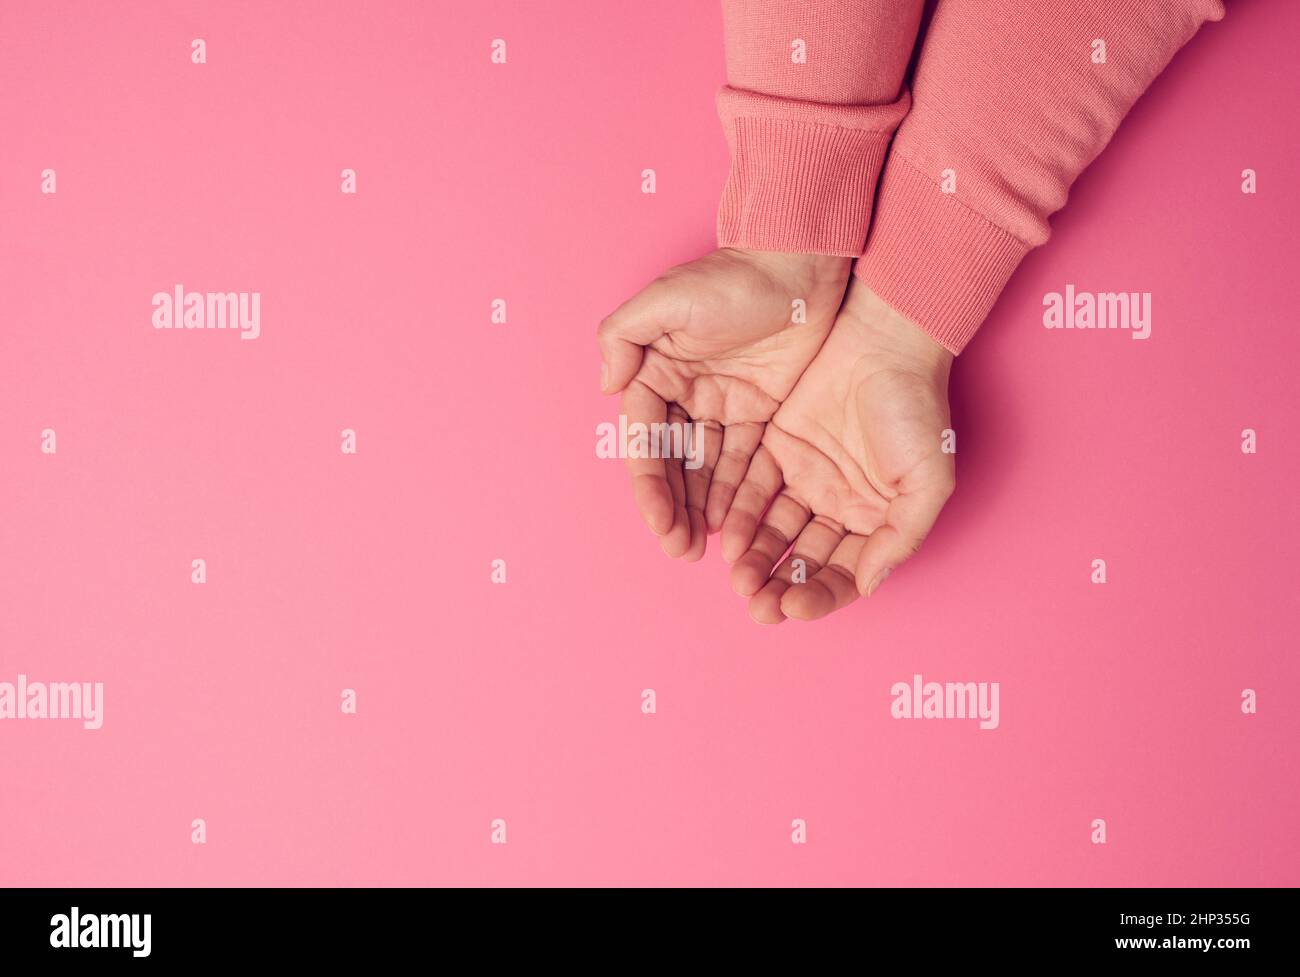 due mani femminili ripiegate da palmo a palmo su sfondo rosa, vista dall'alto Foto Stock